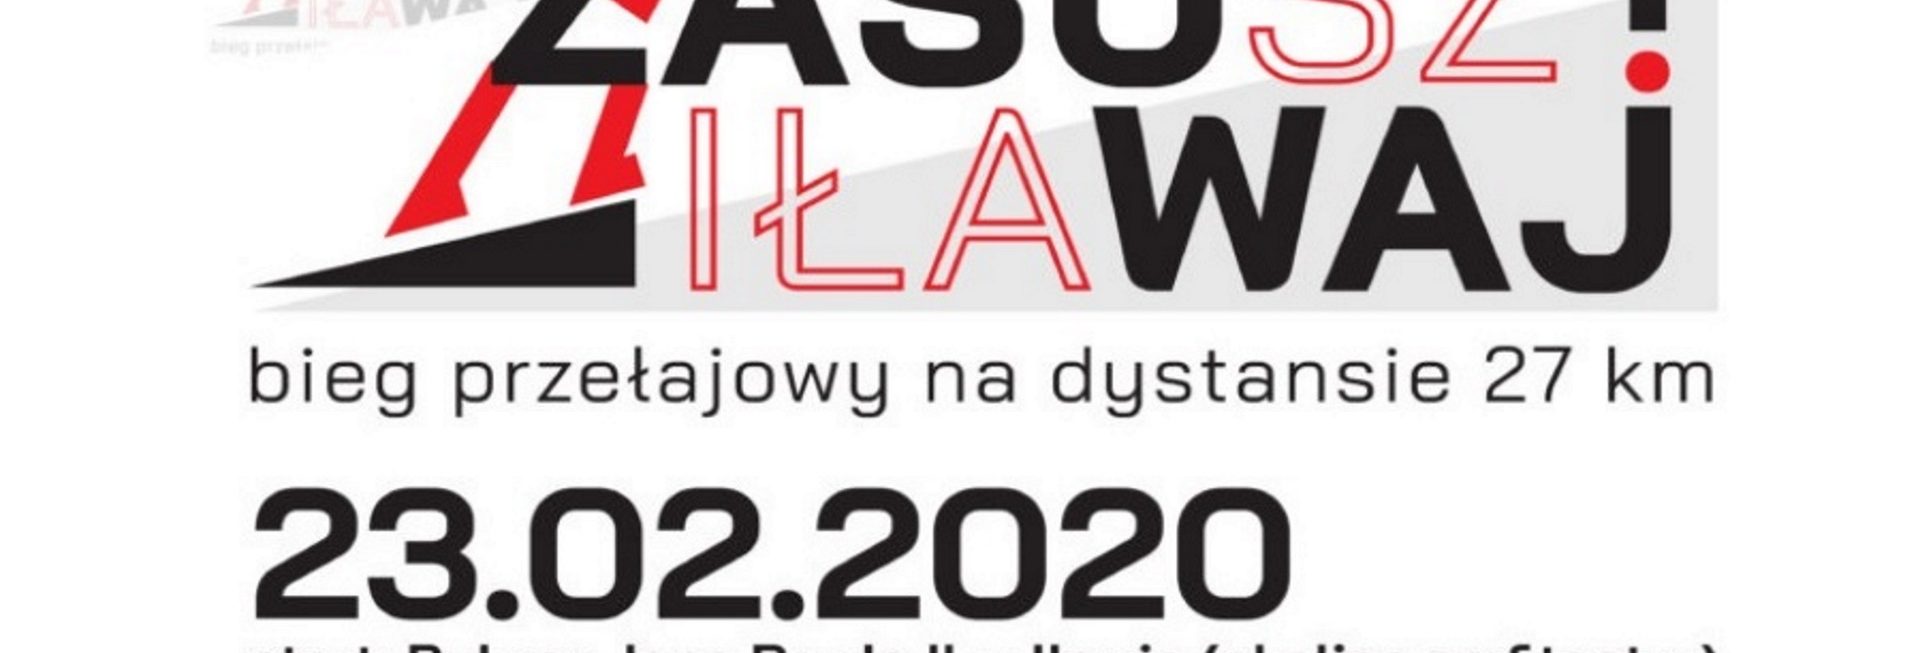 Zdjęcie, plakat graficzny zapraszający w dniu 23 lutego 2020 roku do Iławy i Pisza na 2 edycję Biegu Iława-Susz "Zasuwaj" 2020. Na plakacie napisy zapraszające na imprezę, tło plakatu białe.